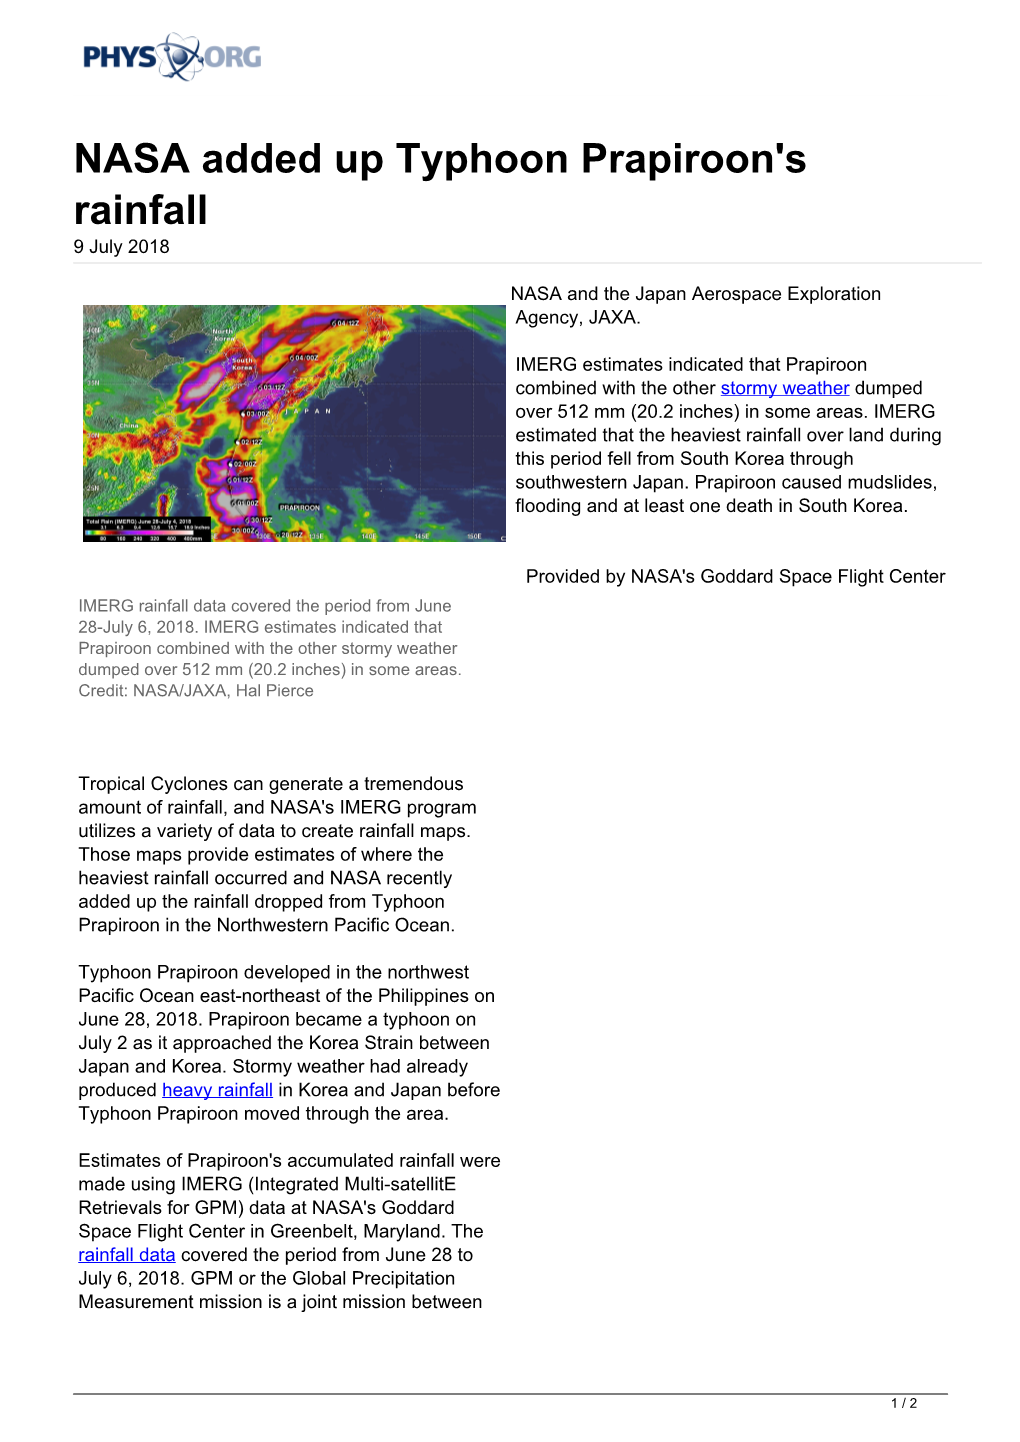 NASA Added up Typhoon Prapiroon's Rainfall 9 July 2018